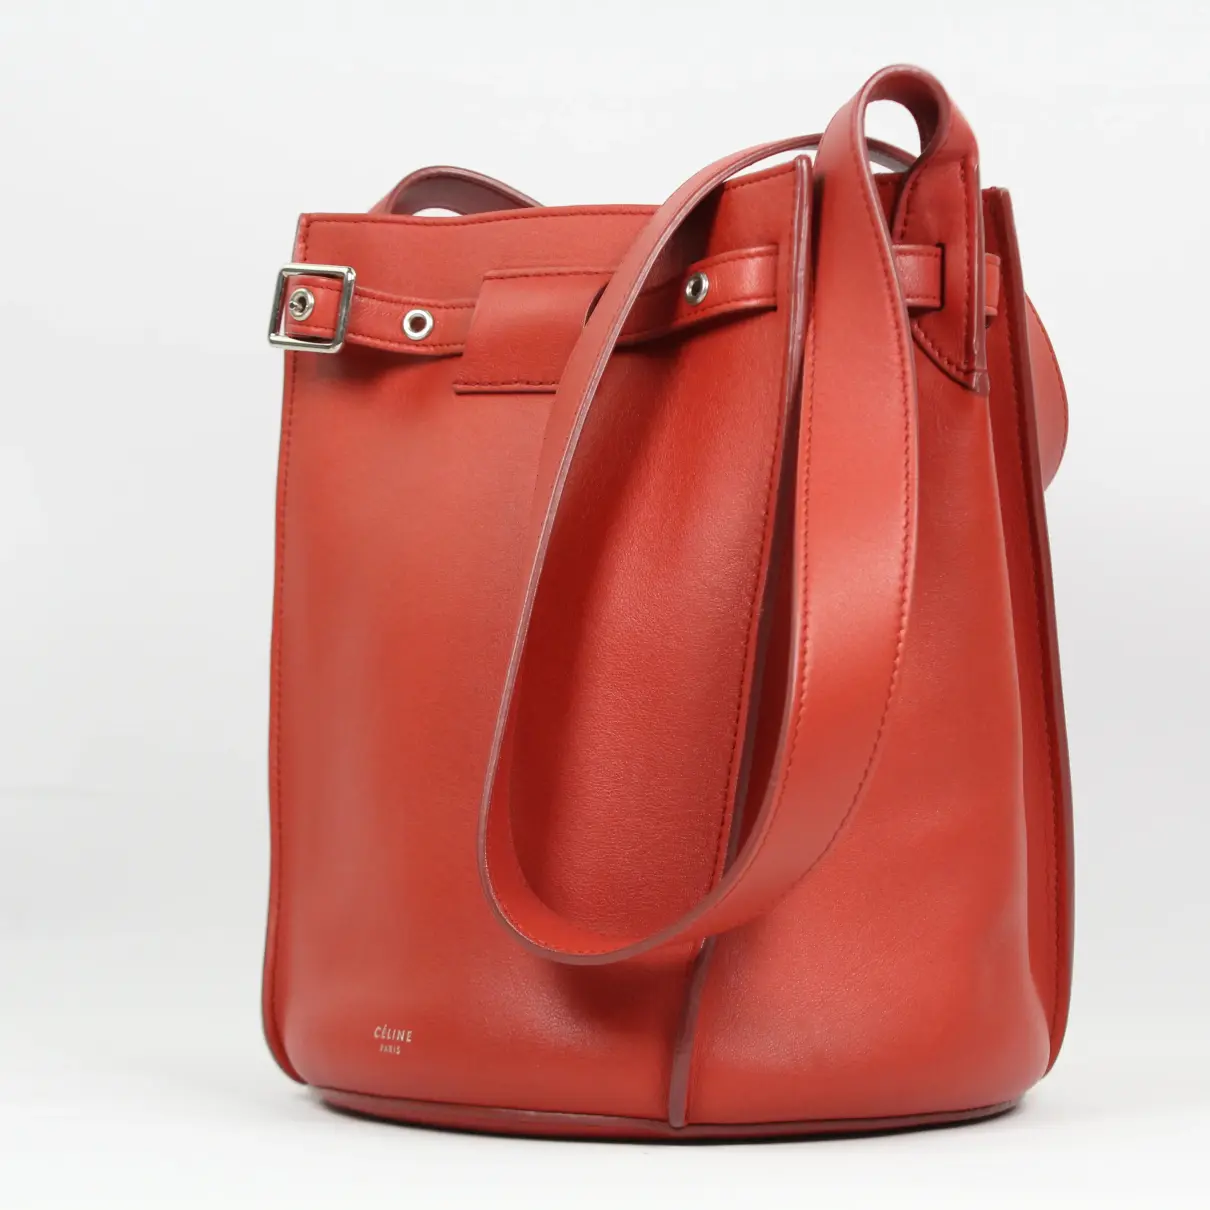 Buy Celine Big Bag leather bag online